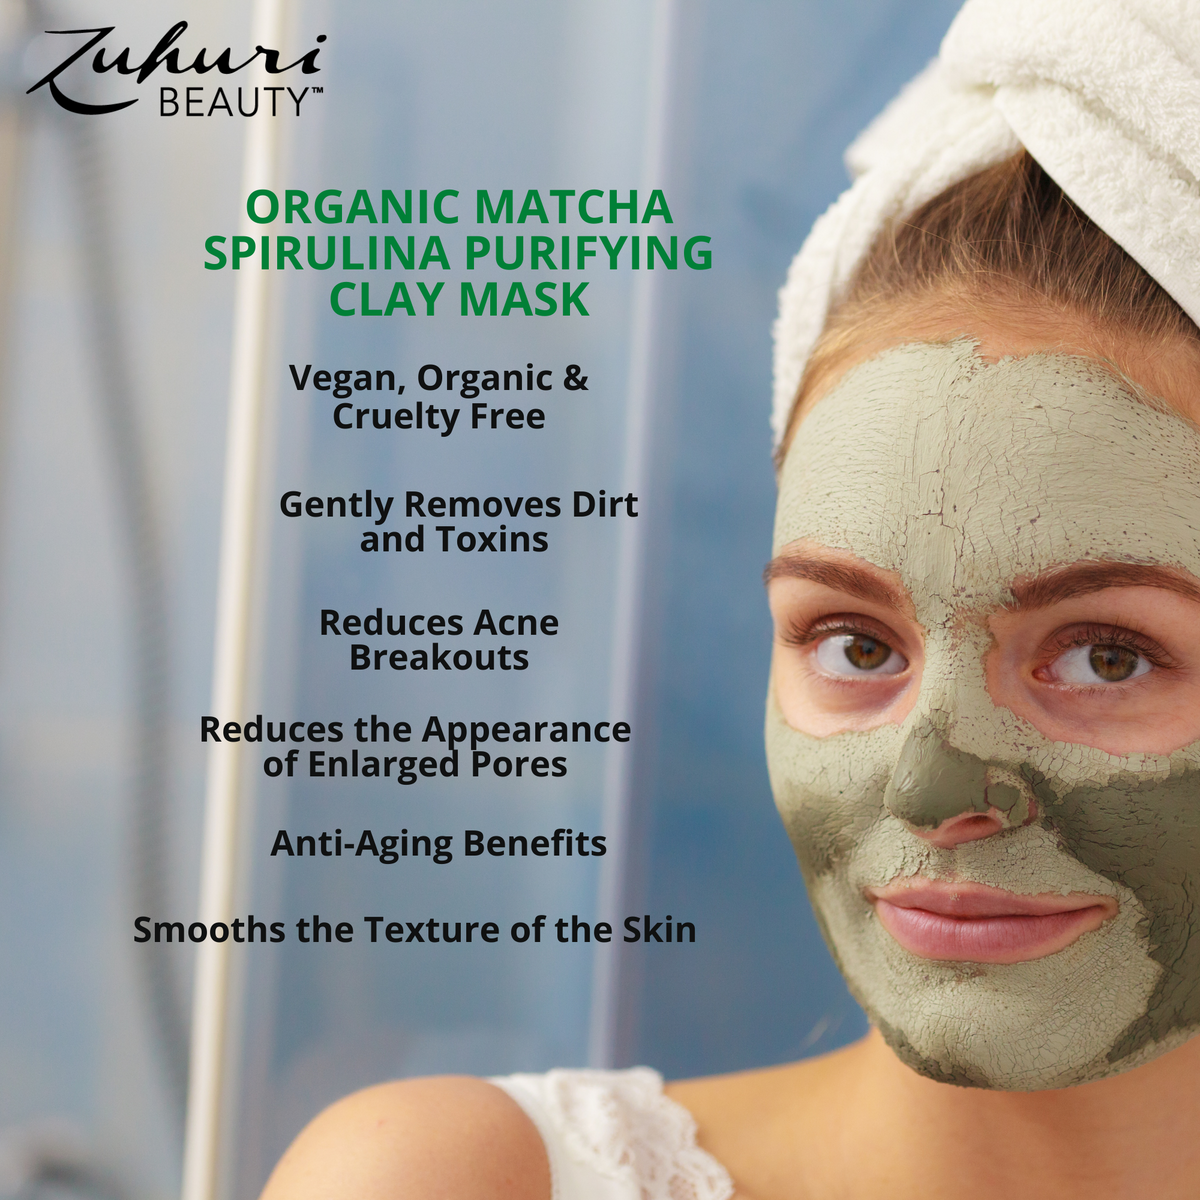 Zuhuri Beauty Organic Matcha Spirulina Purifying Clay Mask